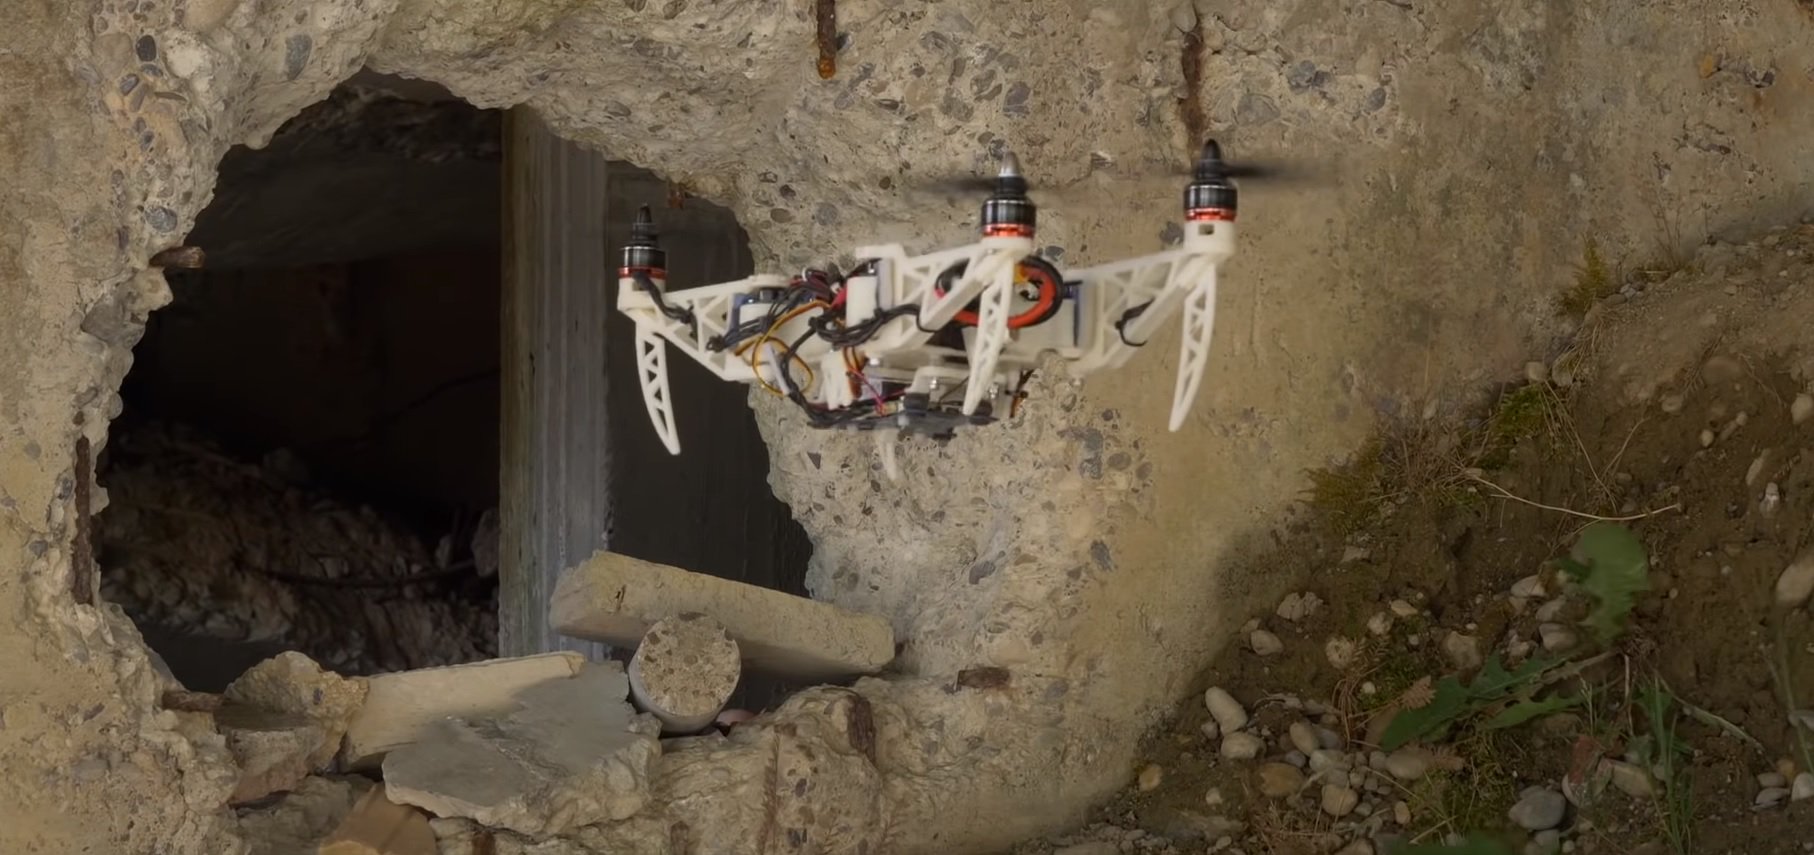 #video | Utviklet kompakte drone, endre sin form i flukt